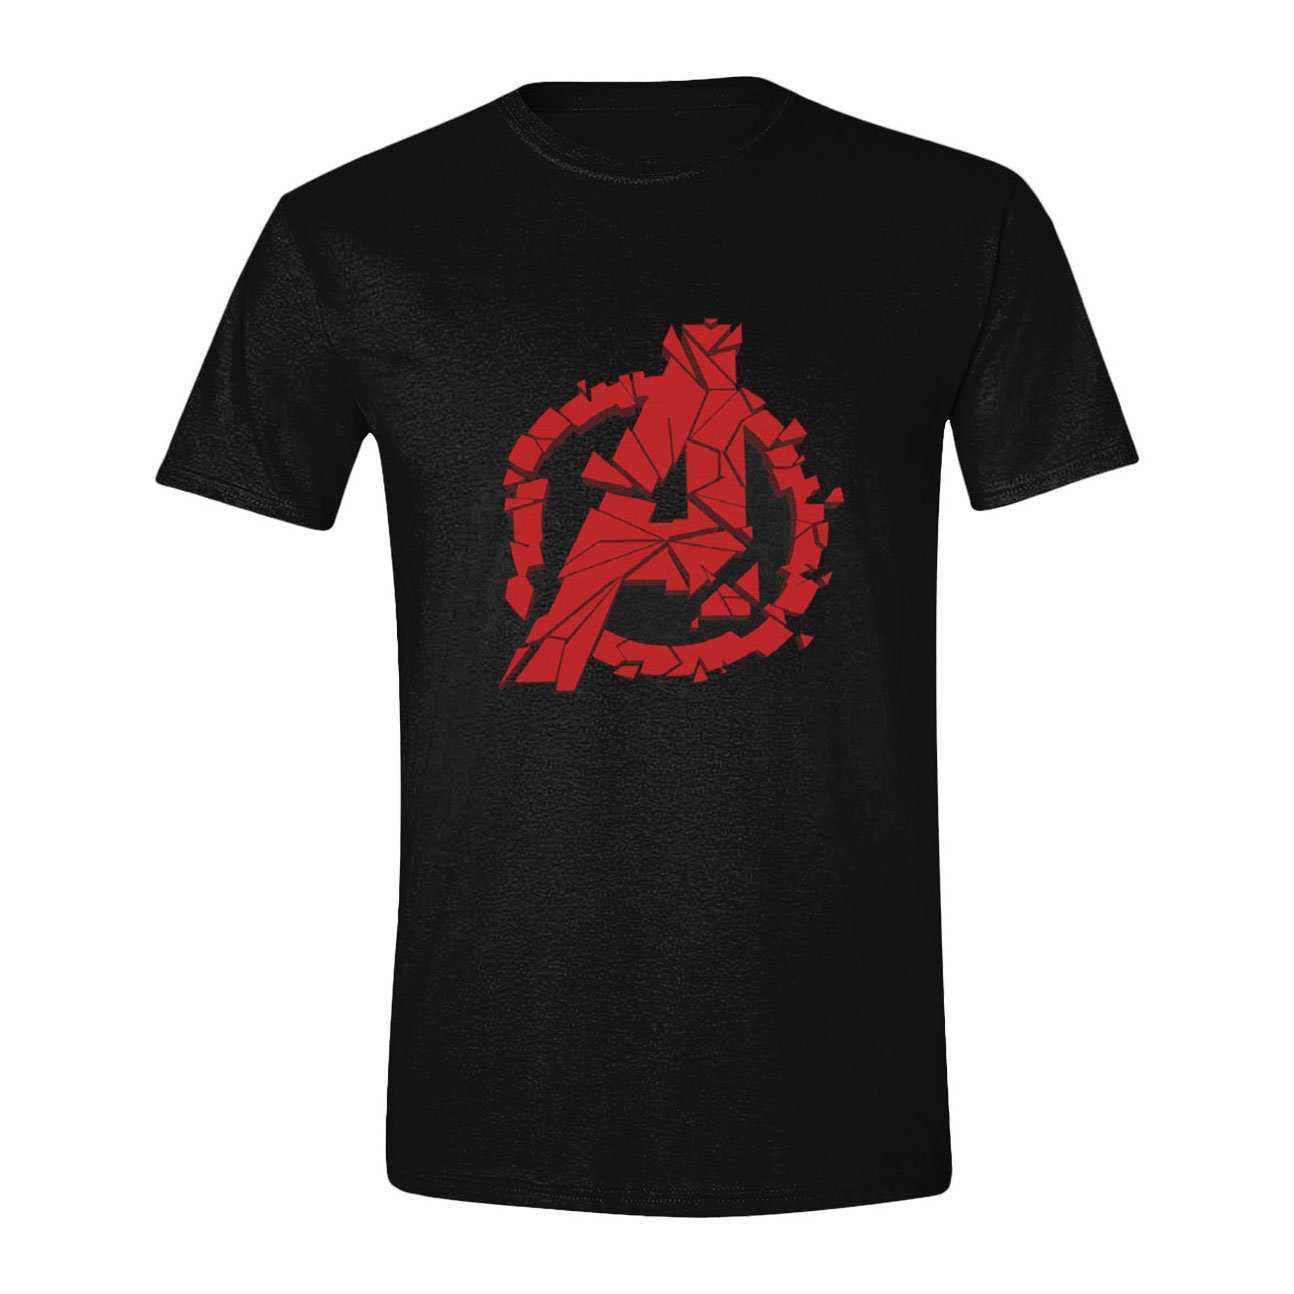 Avengers : Endgame T-Shirt Shattered Logo (XL)